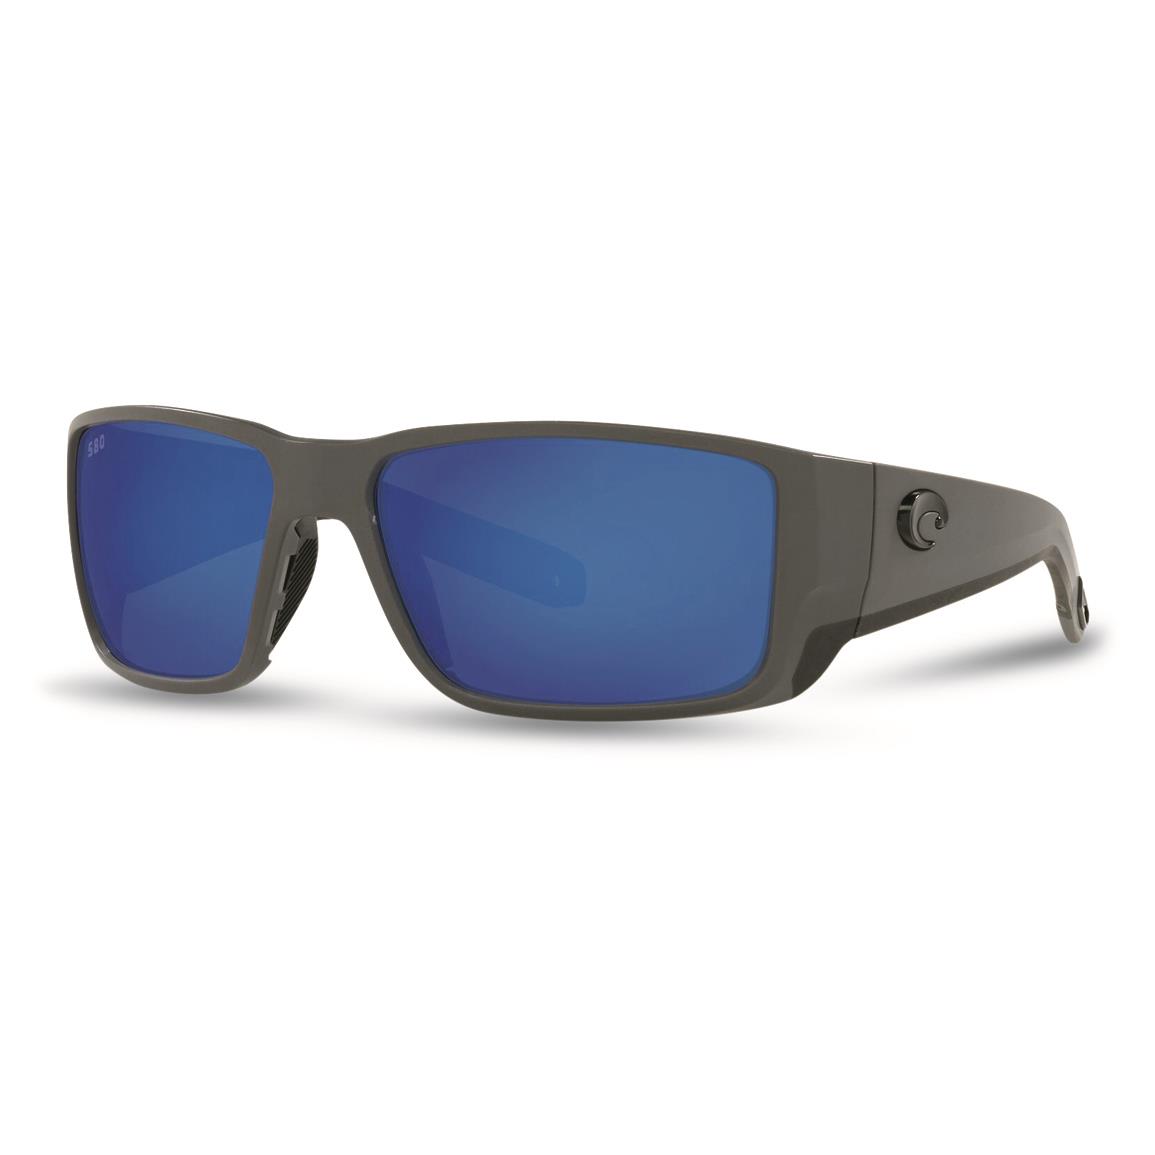 Costa Men's Blackfin Pro 580G Polarized Sunglasses, Matte Gray/blue Mirror